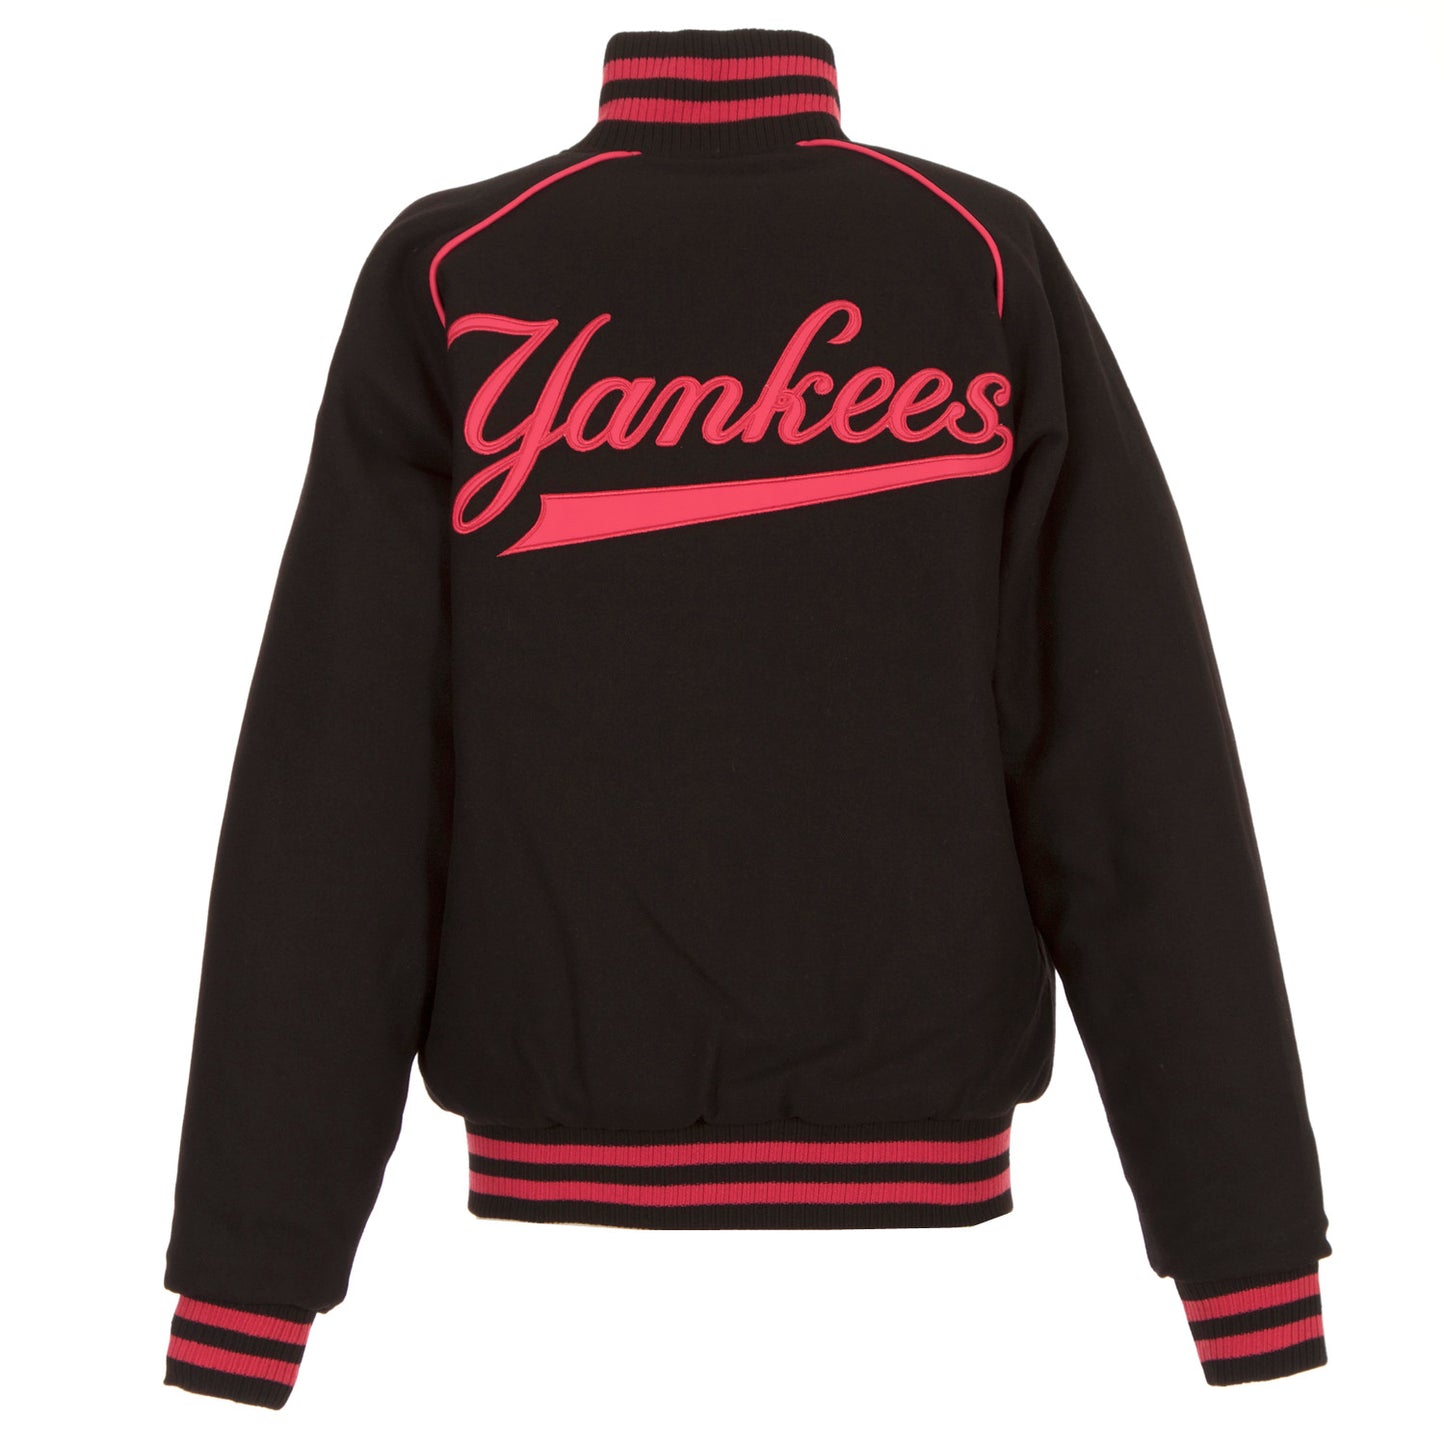 New York Yankees Ladies Reversible Wool Jacket